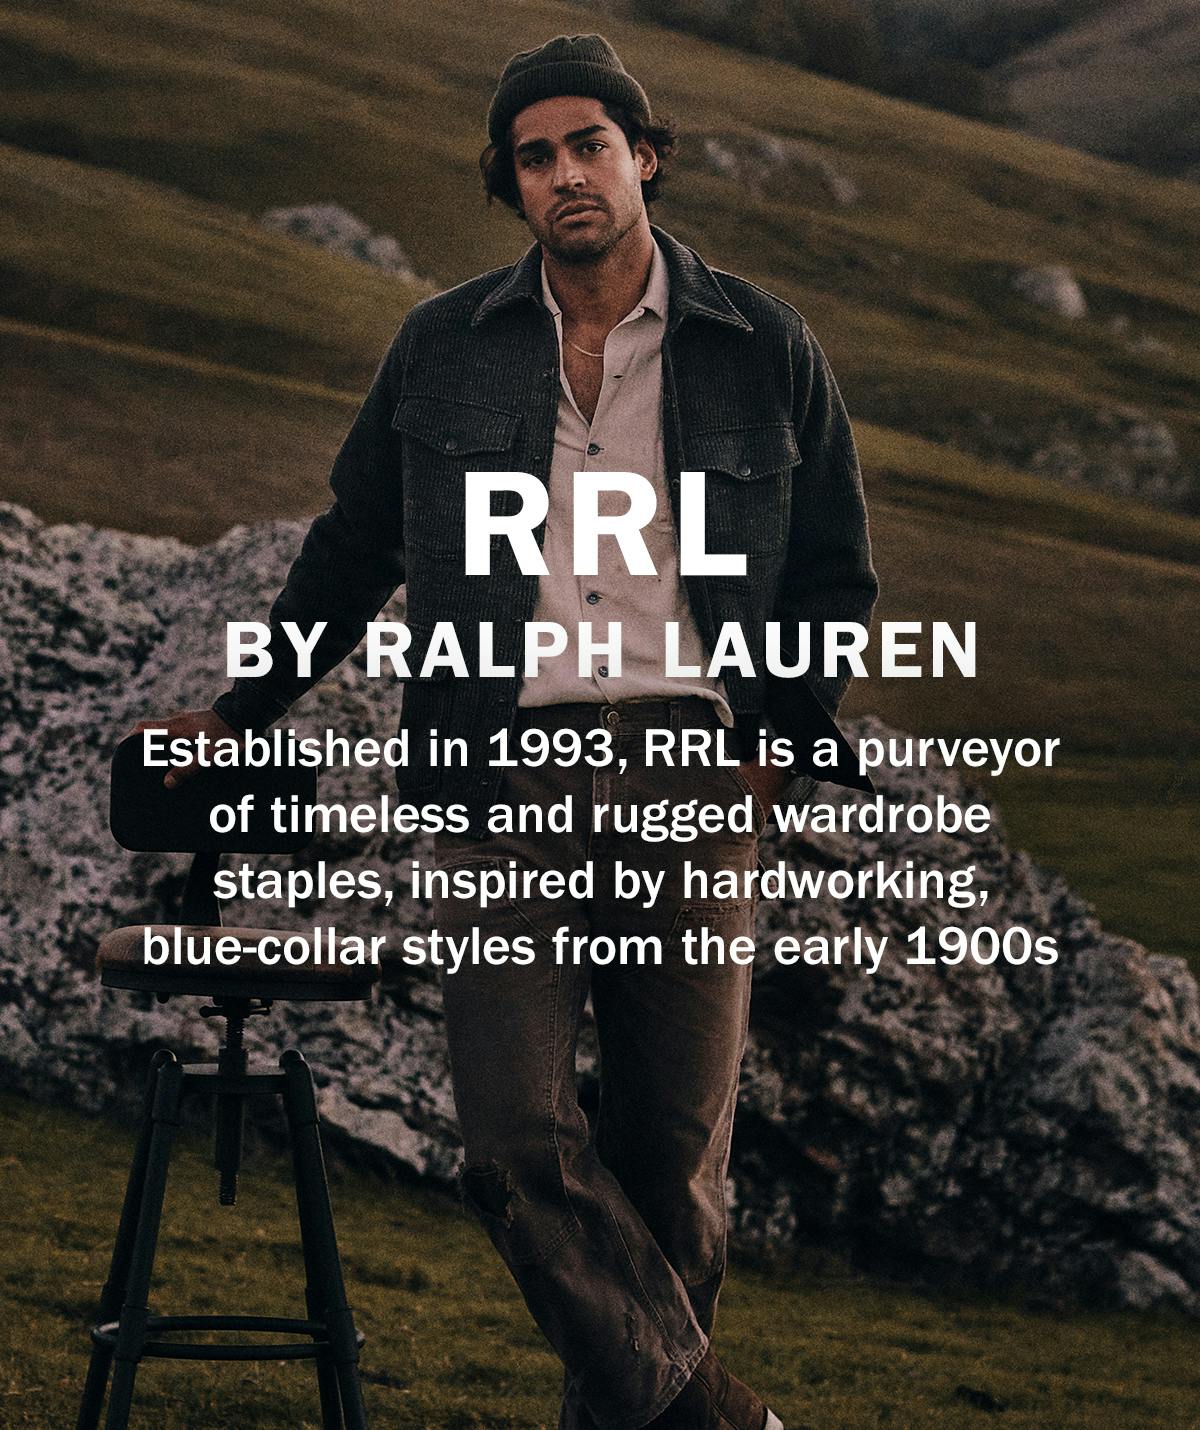 RRL BY RALPH LAUREN